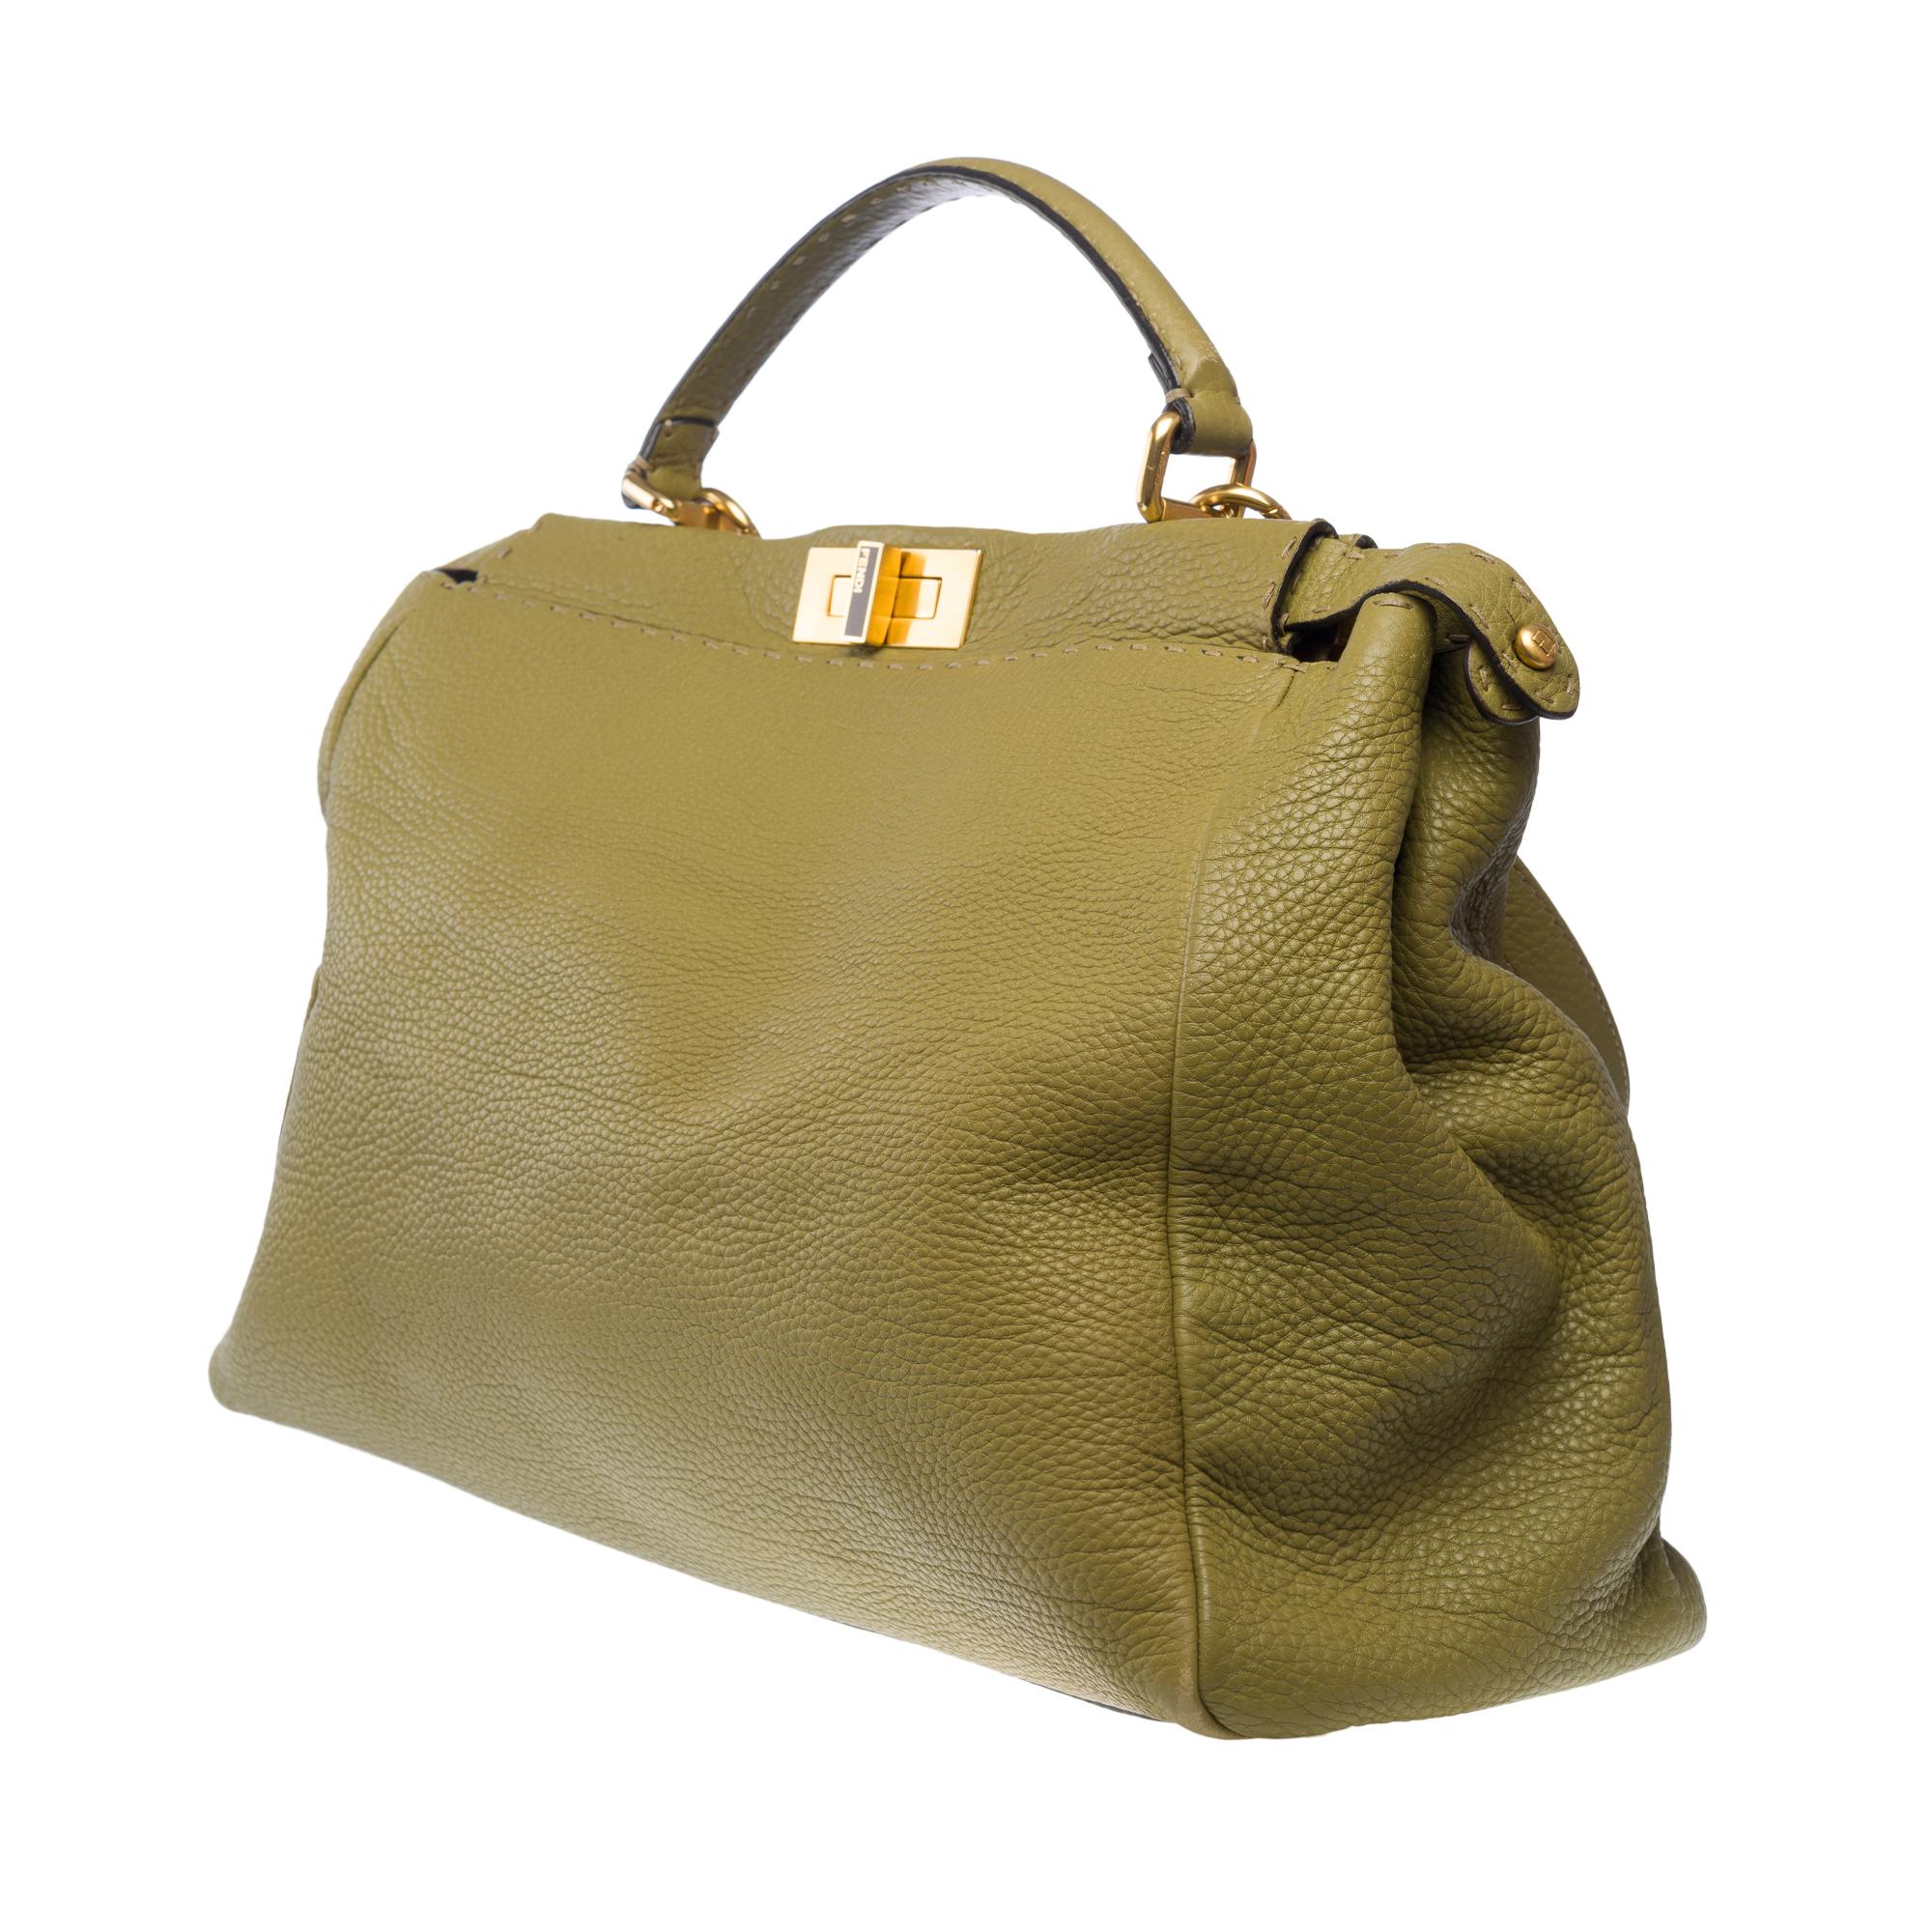 Fendi Grand Modele Peekaboo handbag strap in Olive Green calf leather, GHW For Sale 1